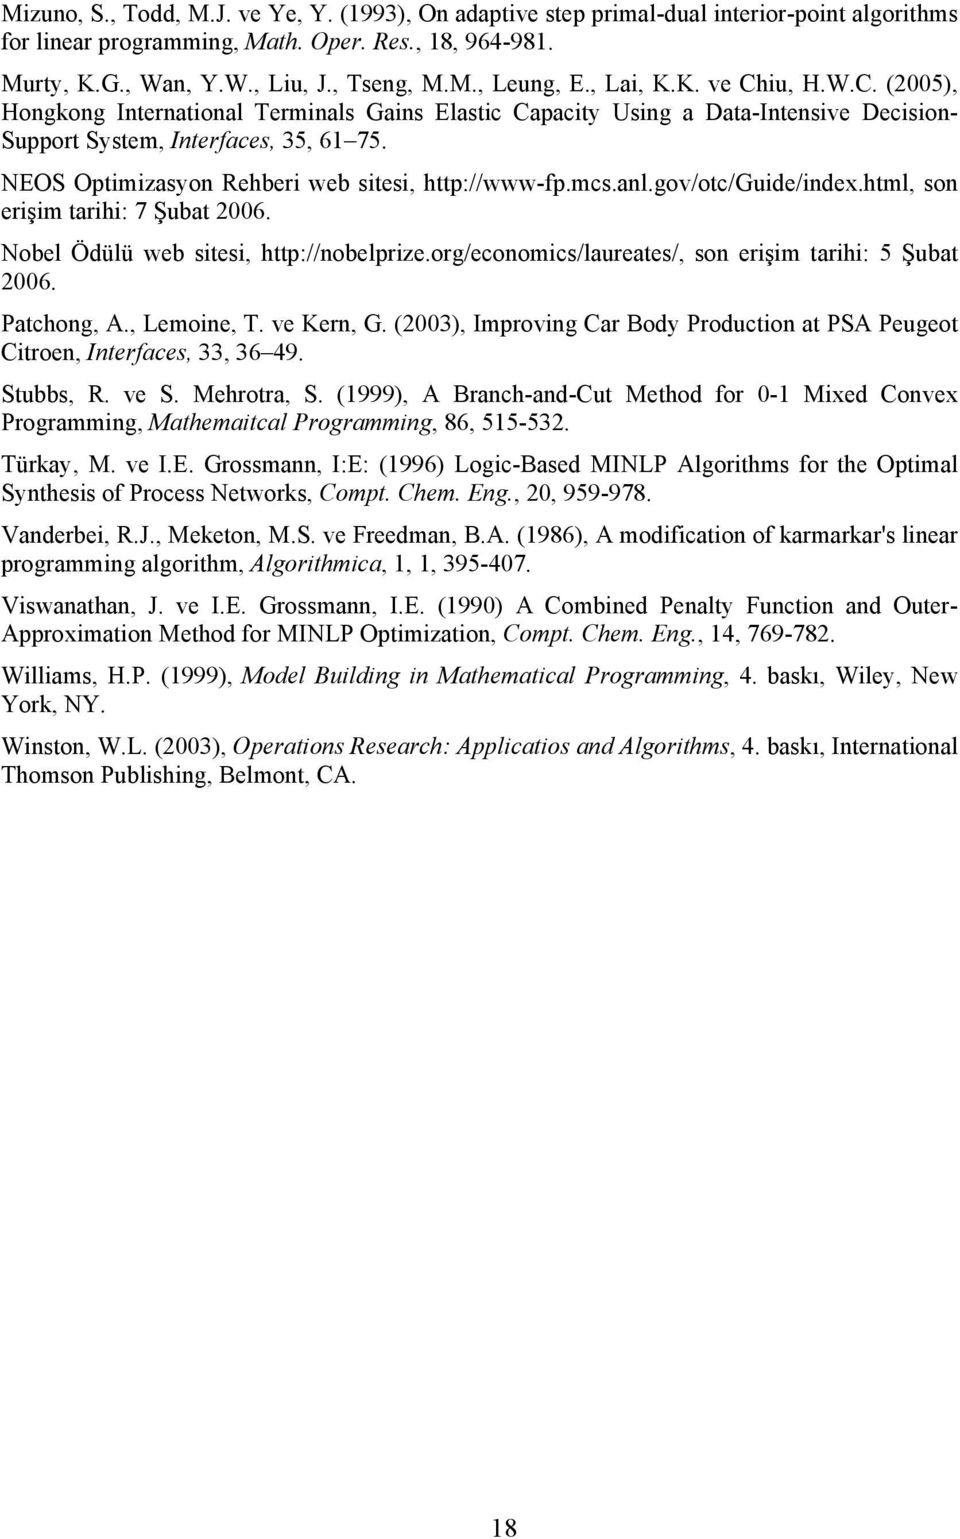 NEOS Optimizasyon Rehberi web sitesi, http://www-fp.mcs.anl.gov/otc/guide/index.html, son erişim tarihi: 7 Şubat 2006. Nobel Ödülü web sitesi, http://nobelprize.